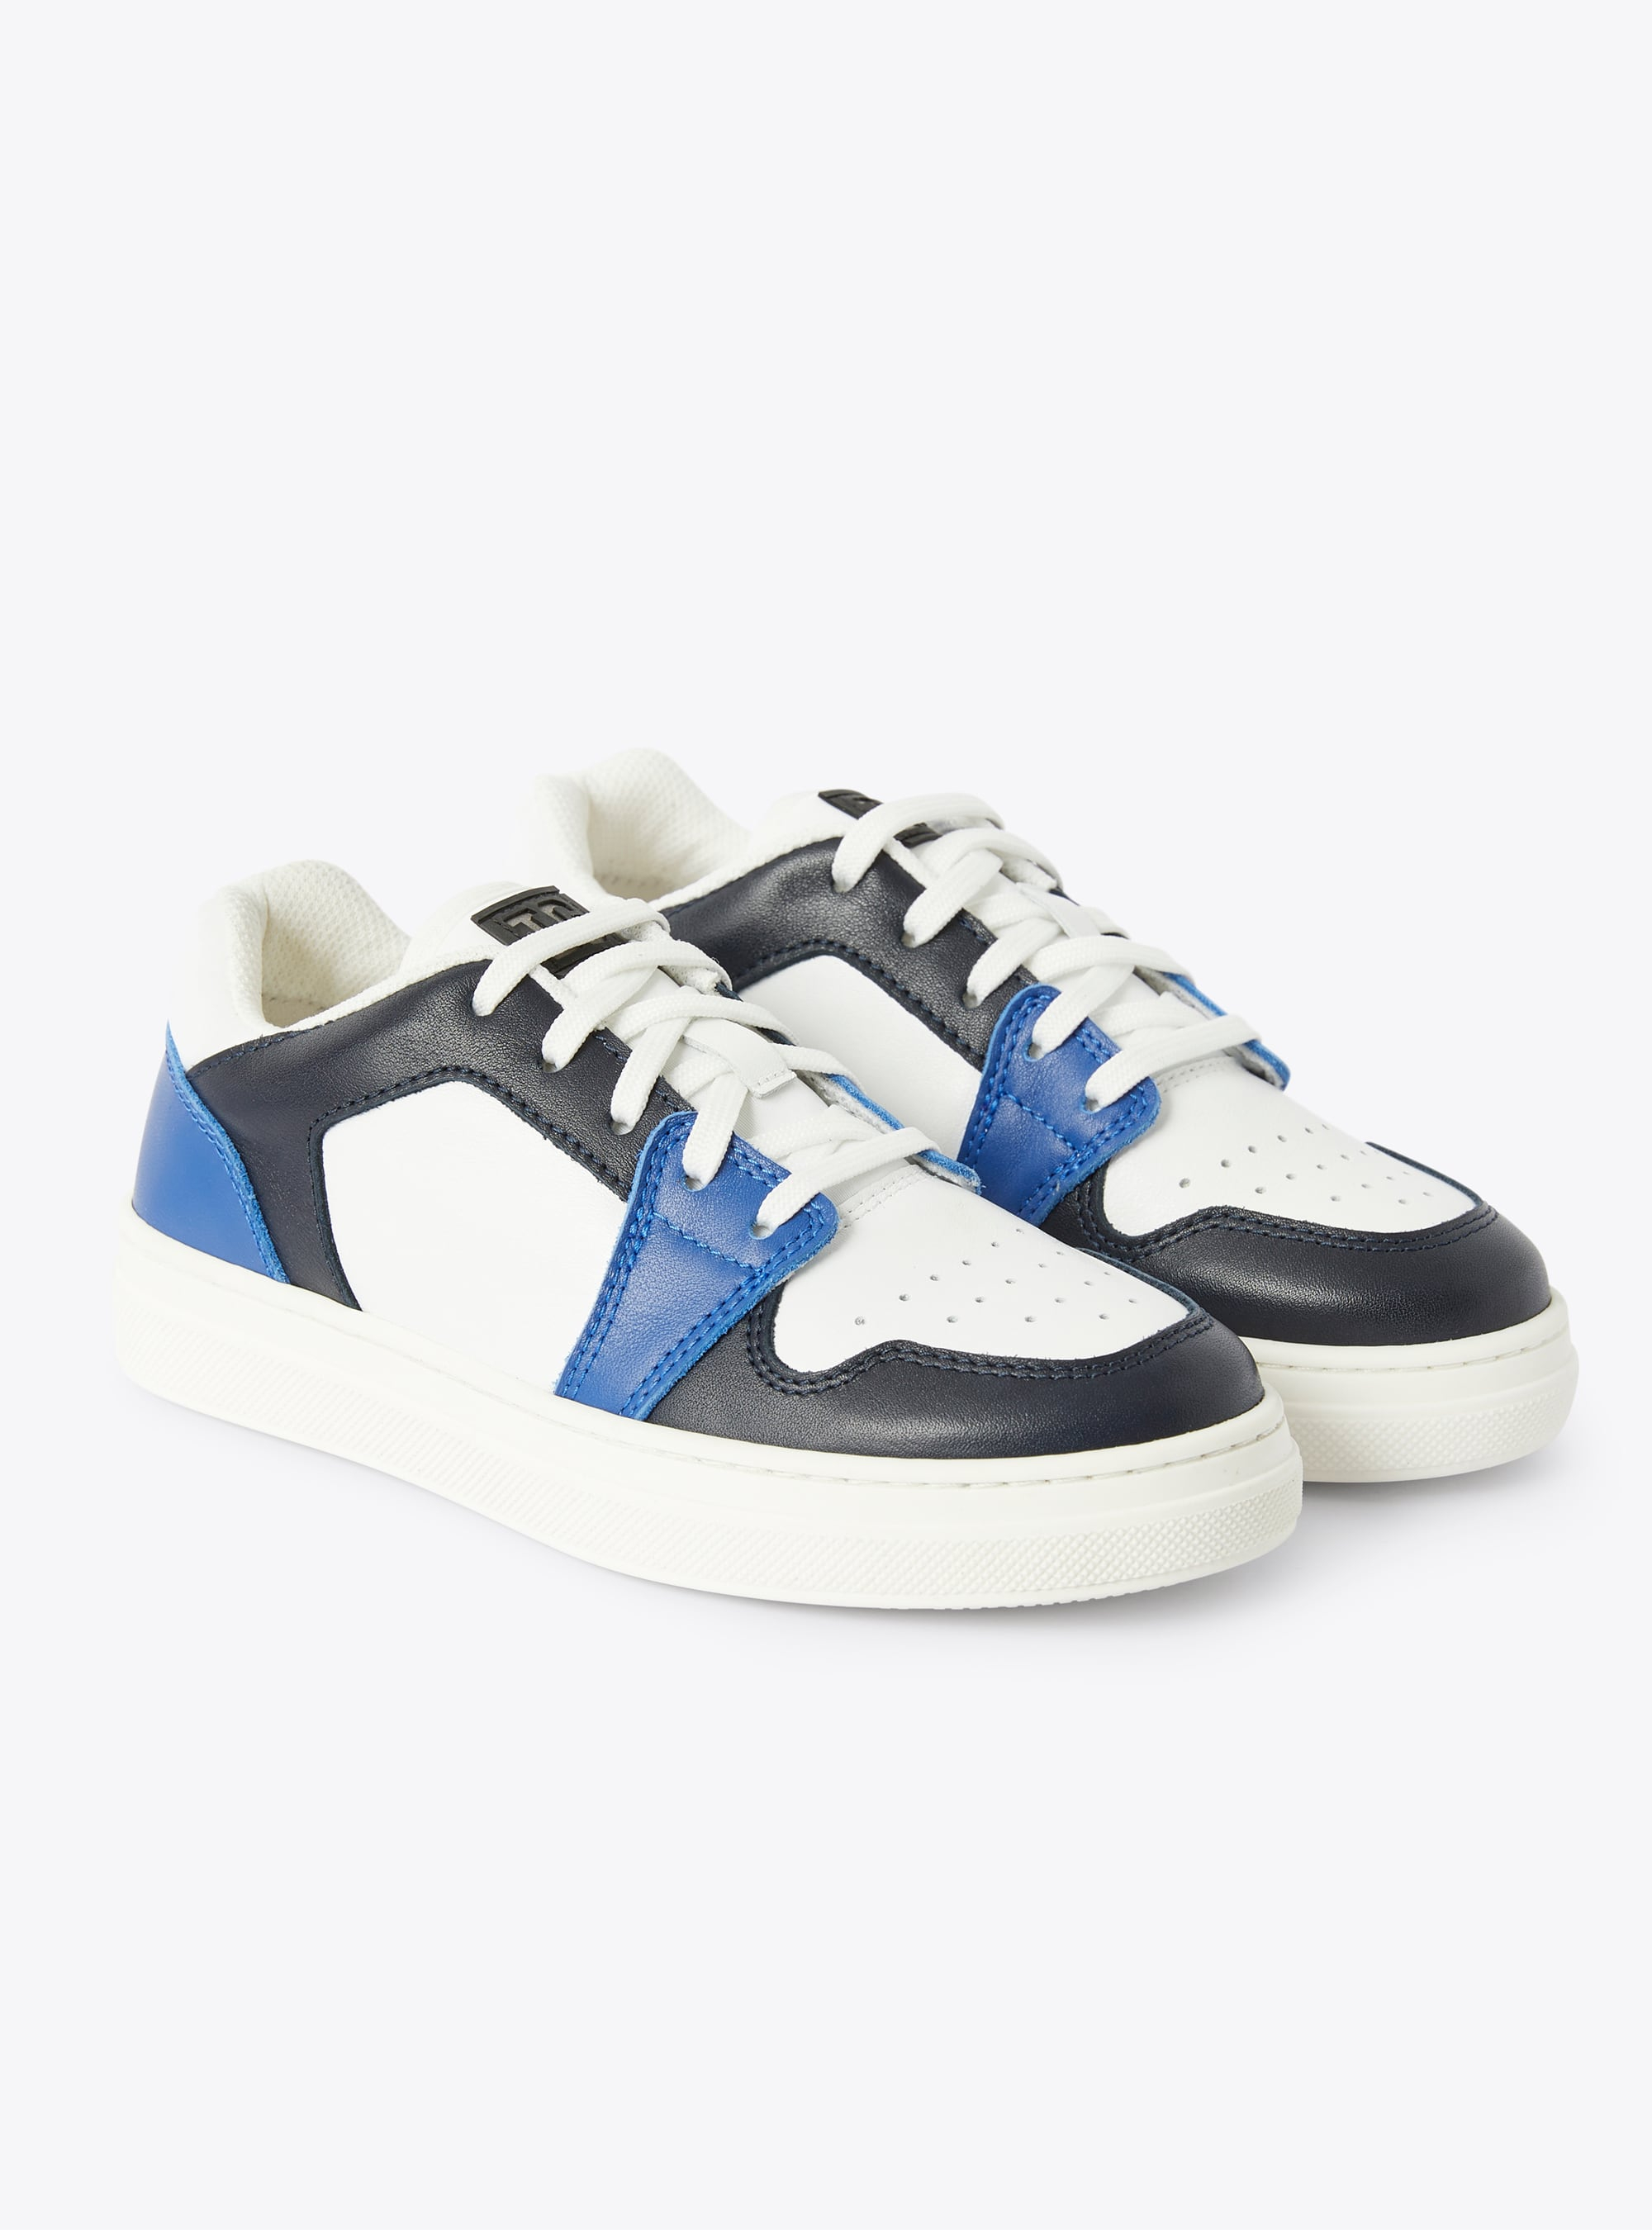 Sneaker IG low top bicolore cobalto e blu - Scarpe - Il Gufo